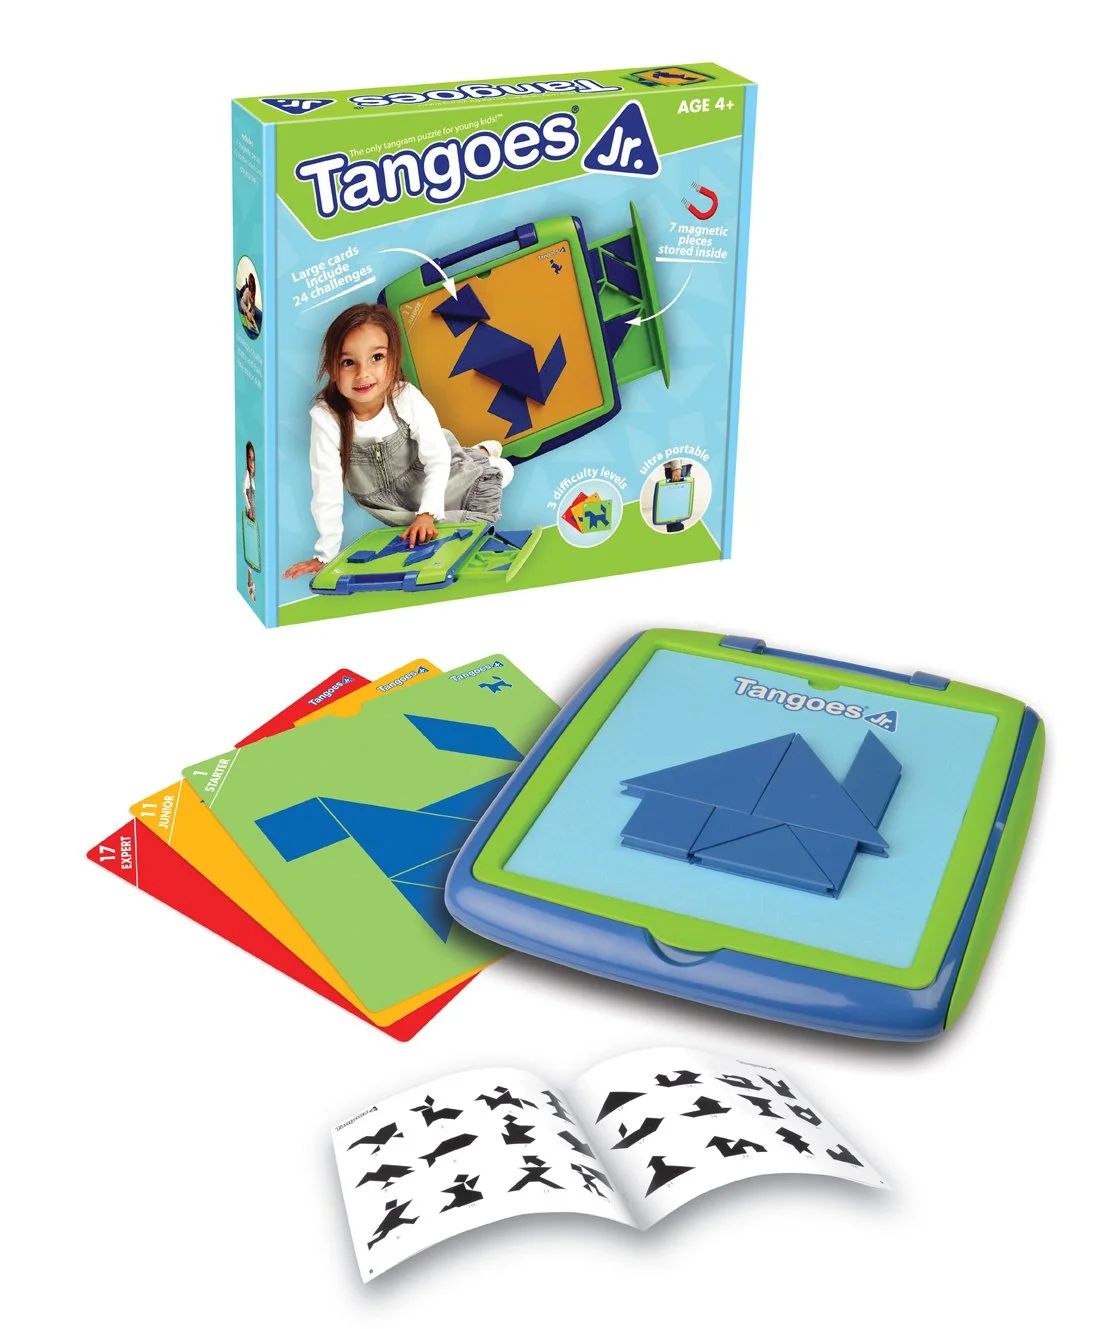 Tangoes Jr. Skill-Building Preschool Tangram Game for Ages 4+ | Walmart (US)